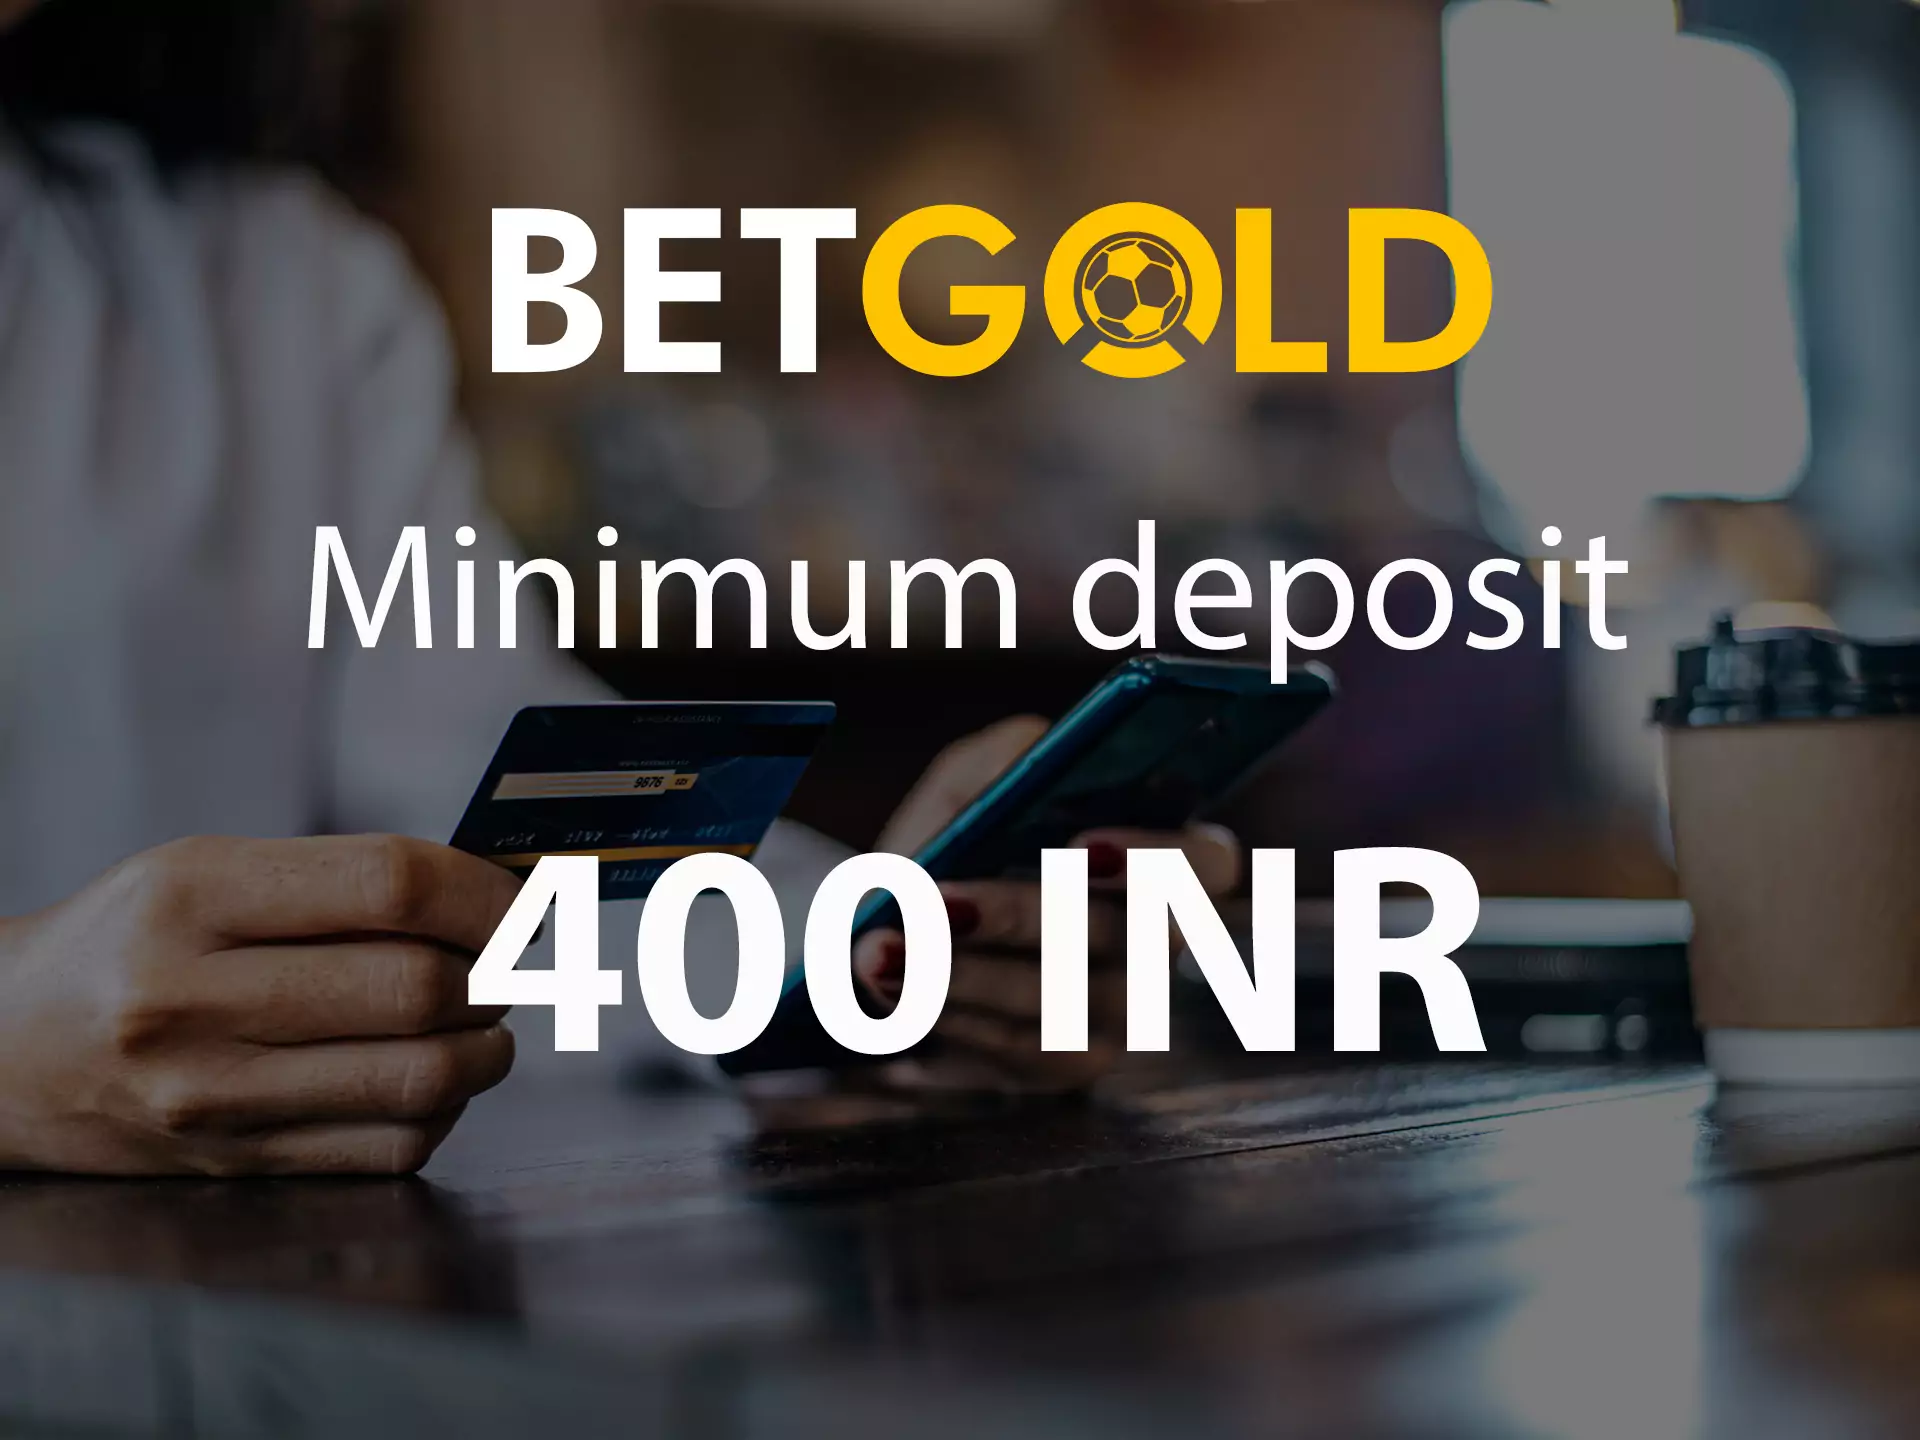 Betgold में आपकी न्यूनतम जमा राशि 400 रुपये से कम नहीं होनी चाहिए।